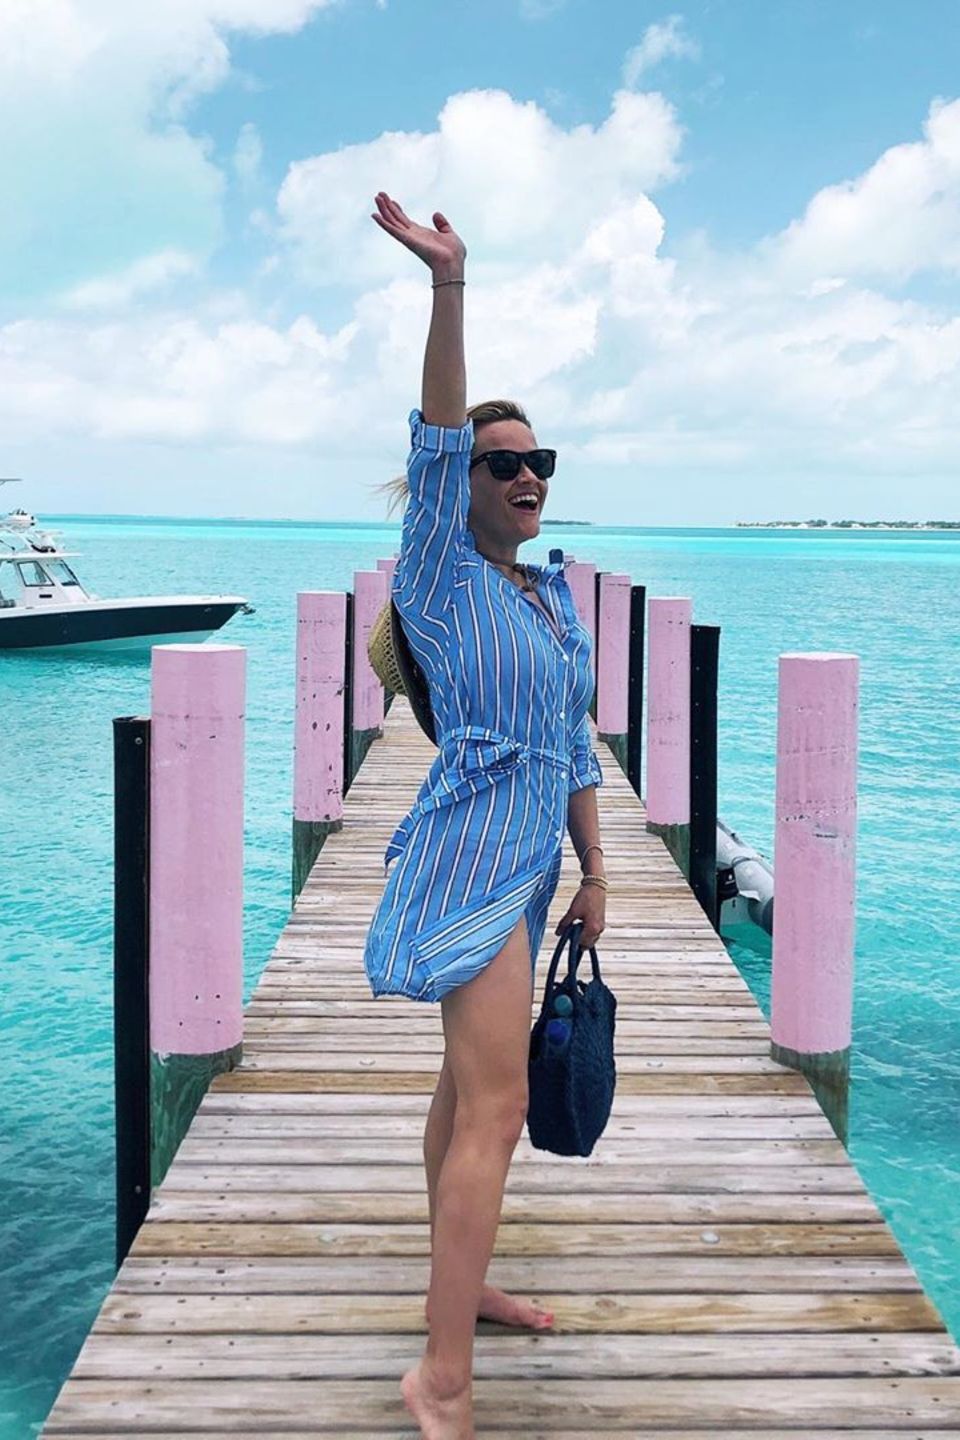 19. Mai 2019  "Hallo Sommer!" Reese Witherspoon macht Lust auf Sommer und versendet via Instagram traumhaft schöne Urlaubsgrüße.